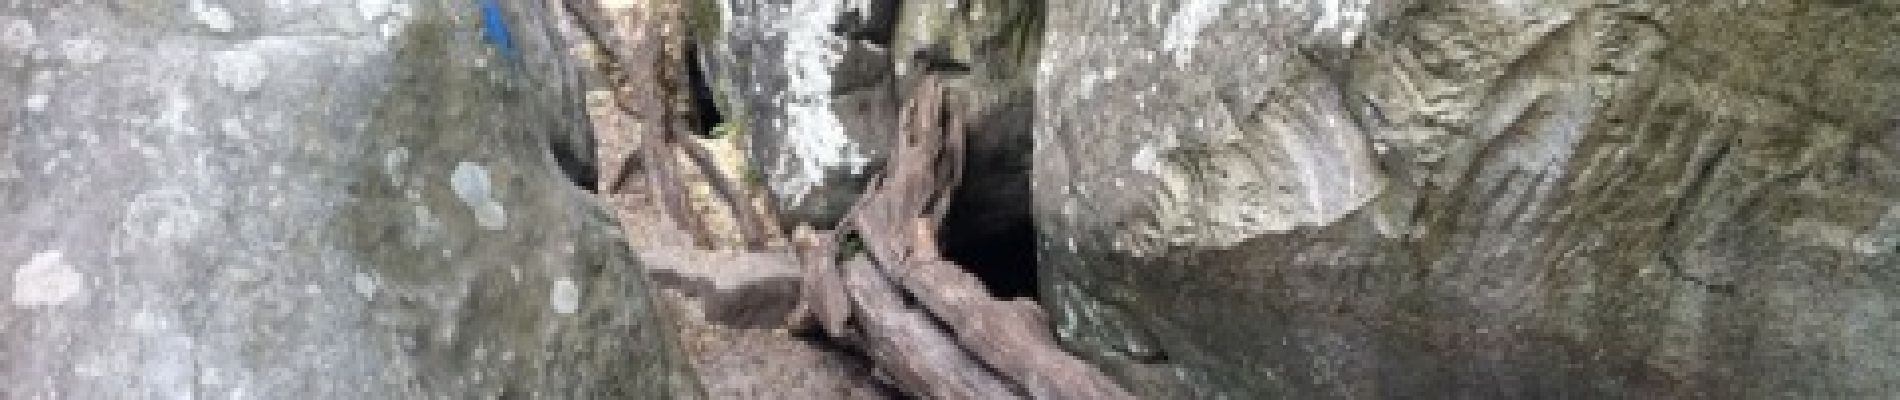 POI Fontainebleau - caverne des brigands - Photo